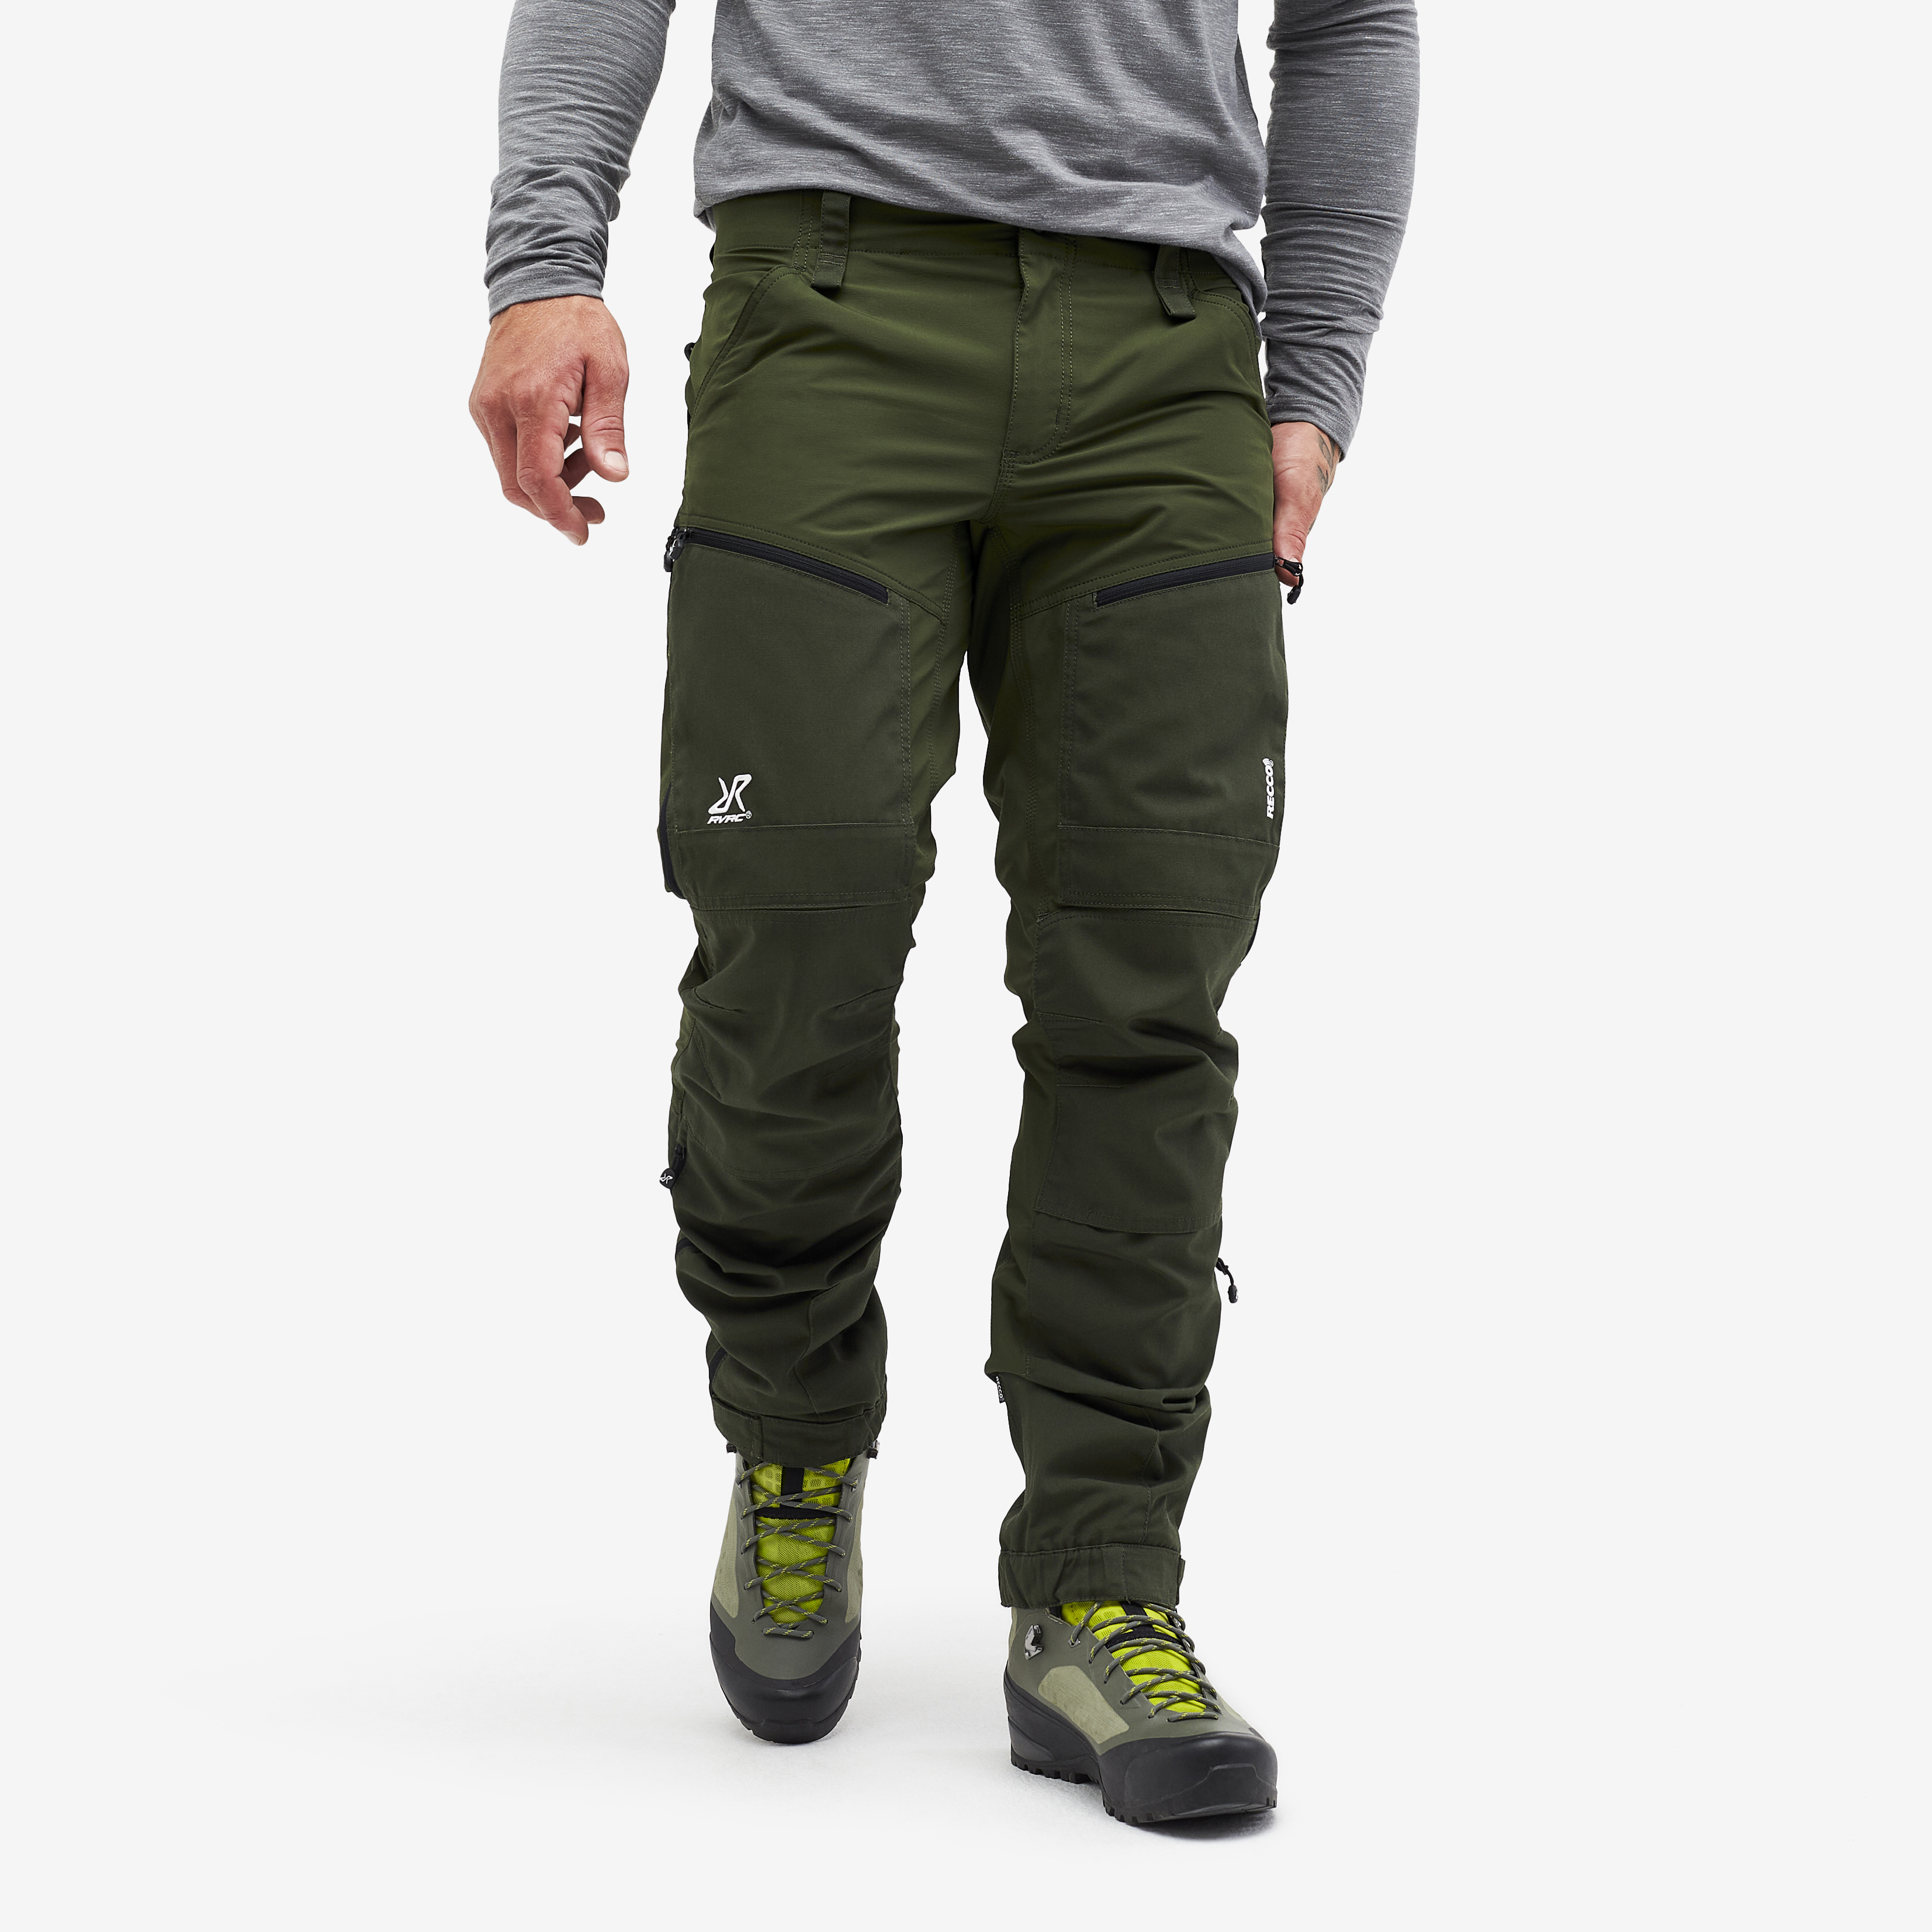 RVRC GP Pro Rescue turistické kalhoty pro muže v zelené barvě